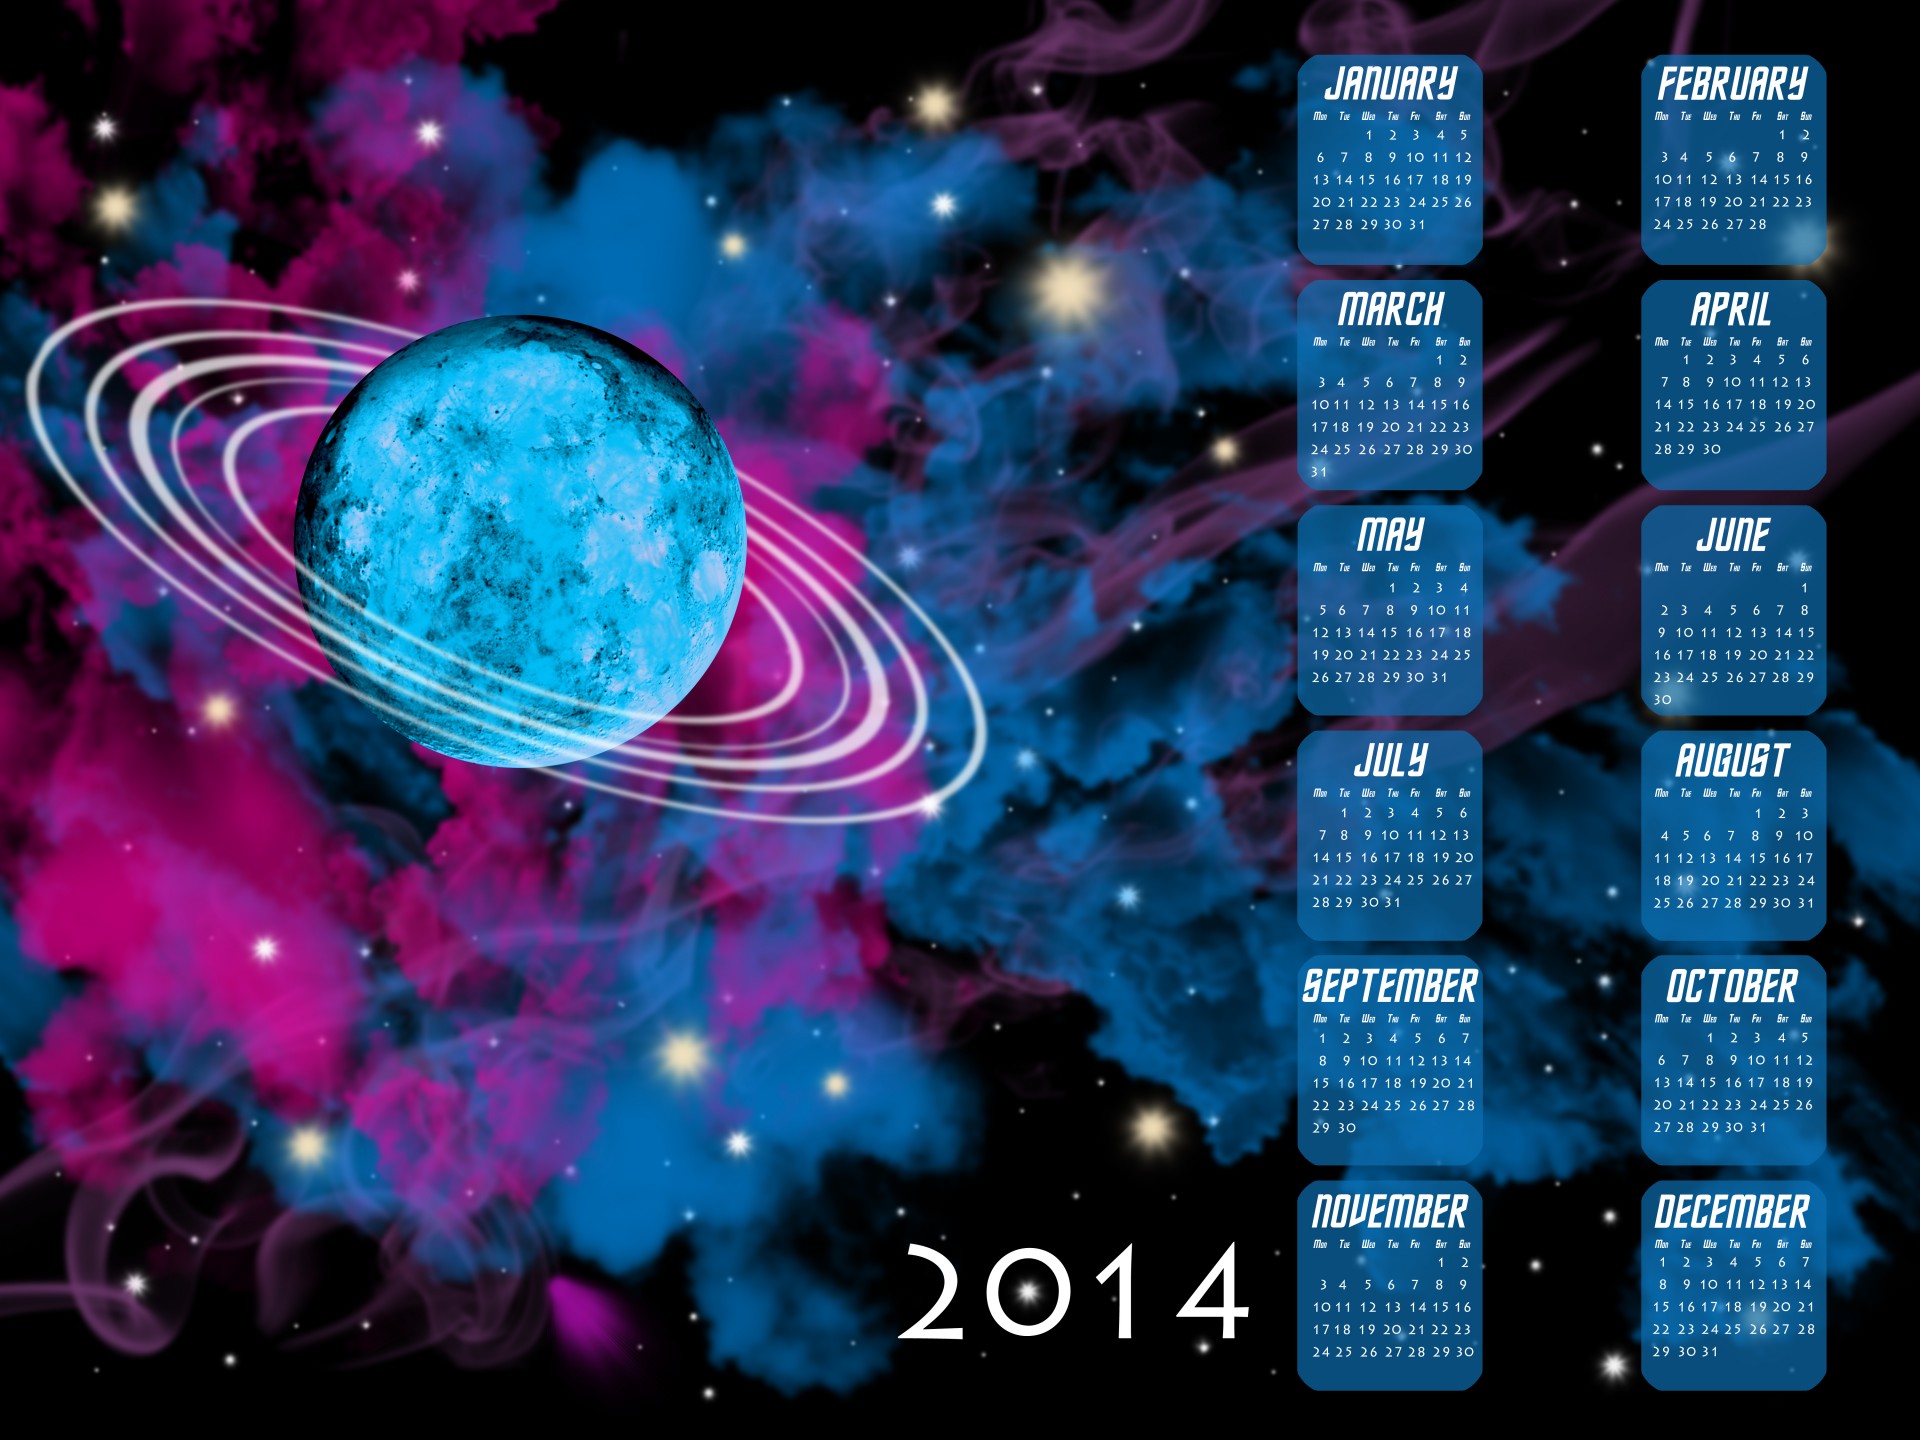 2014,  2014 & Nbsp,  Kalendorius,  Kalendorius,  Erdvė,  Fantazija,  Mokslas,  Mokslas & Nbsp,  Fantastika,  Planeta